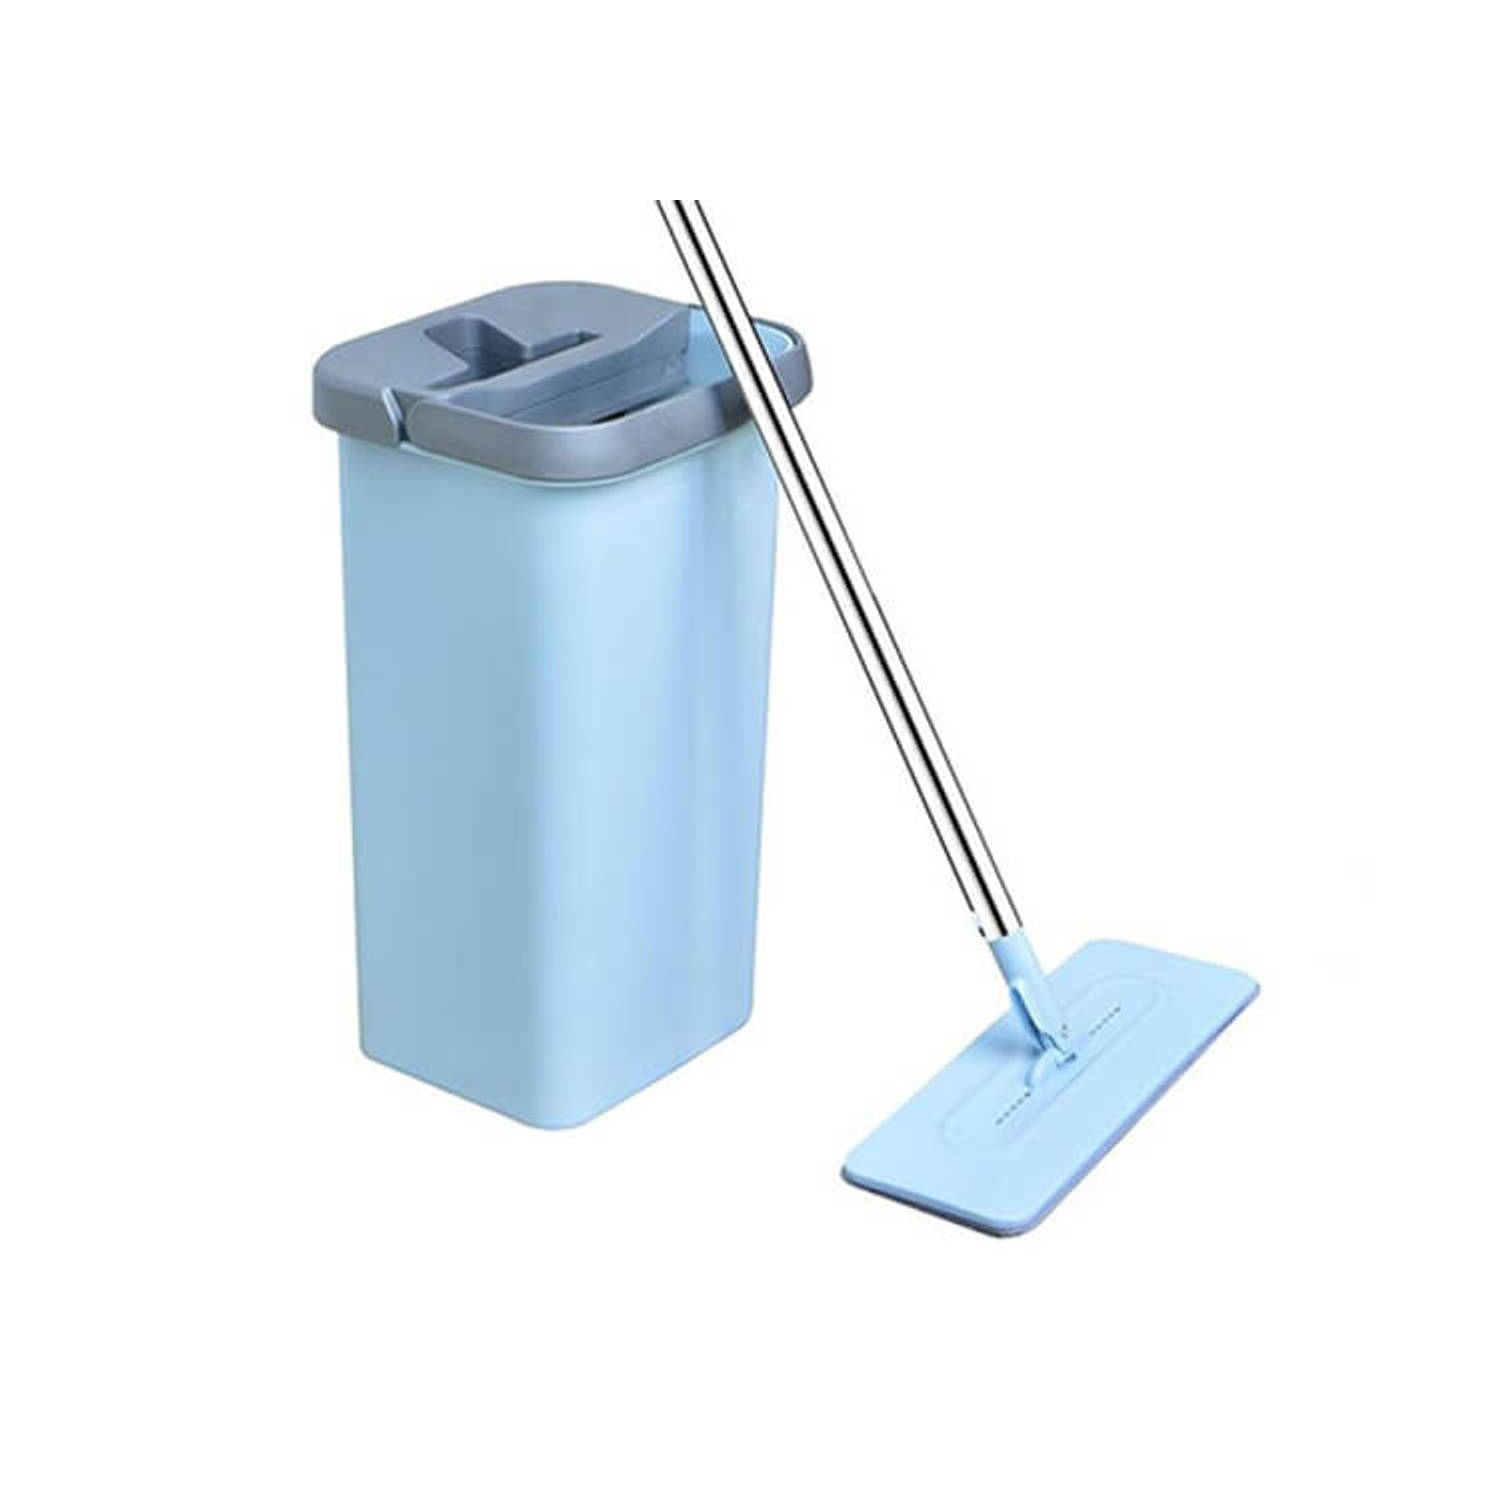 regering inhoud lid Benson Clean Flat Mop - Blauw - Zelfreinigend Mechanisme - Microvezel |  Blokker